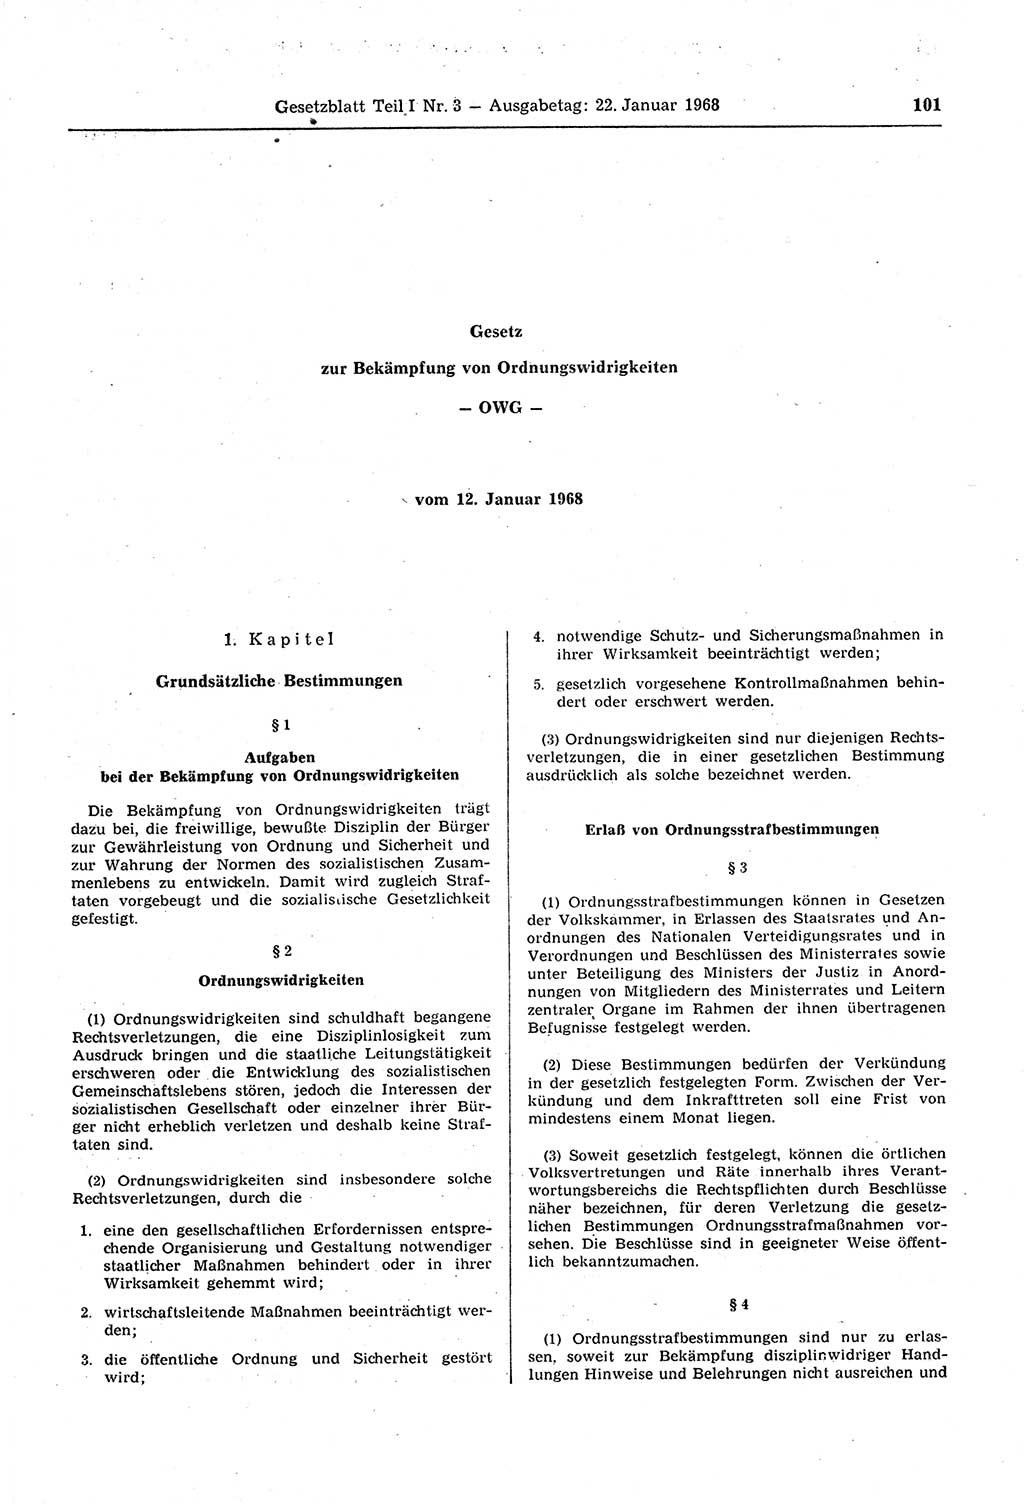 Gesetzblatt (GBl.) der Deutschen Demokratischen Republik (DDR) Teil Ⅰ 1968, Seite 101 (GBl. DDR Ⅰ 1968, S. 101)